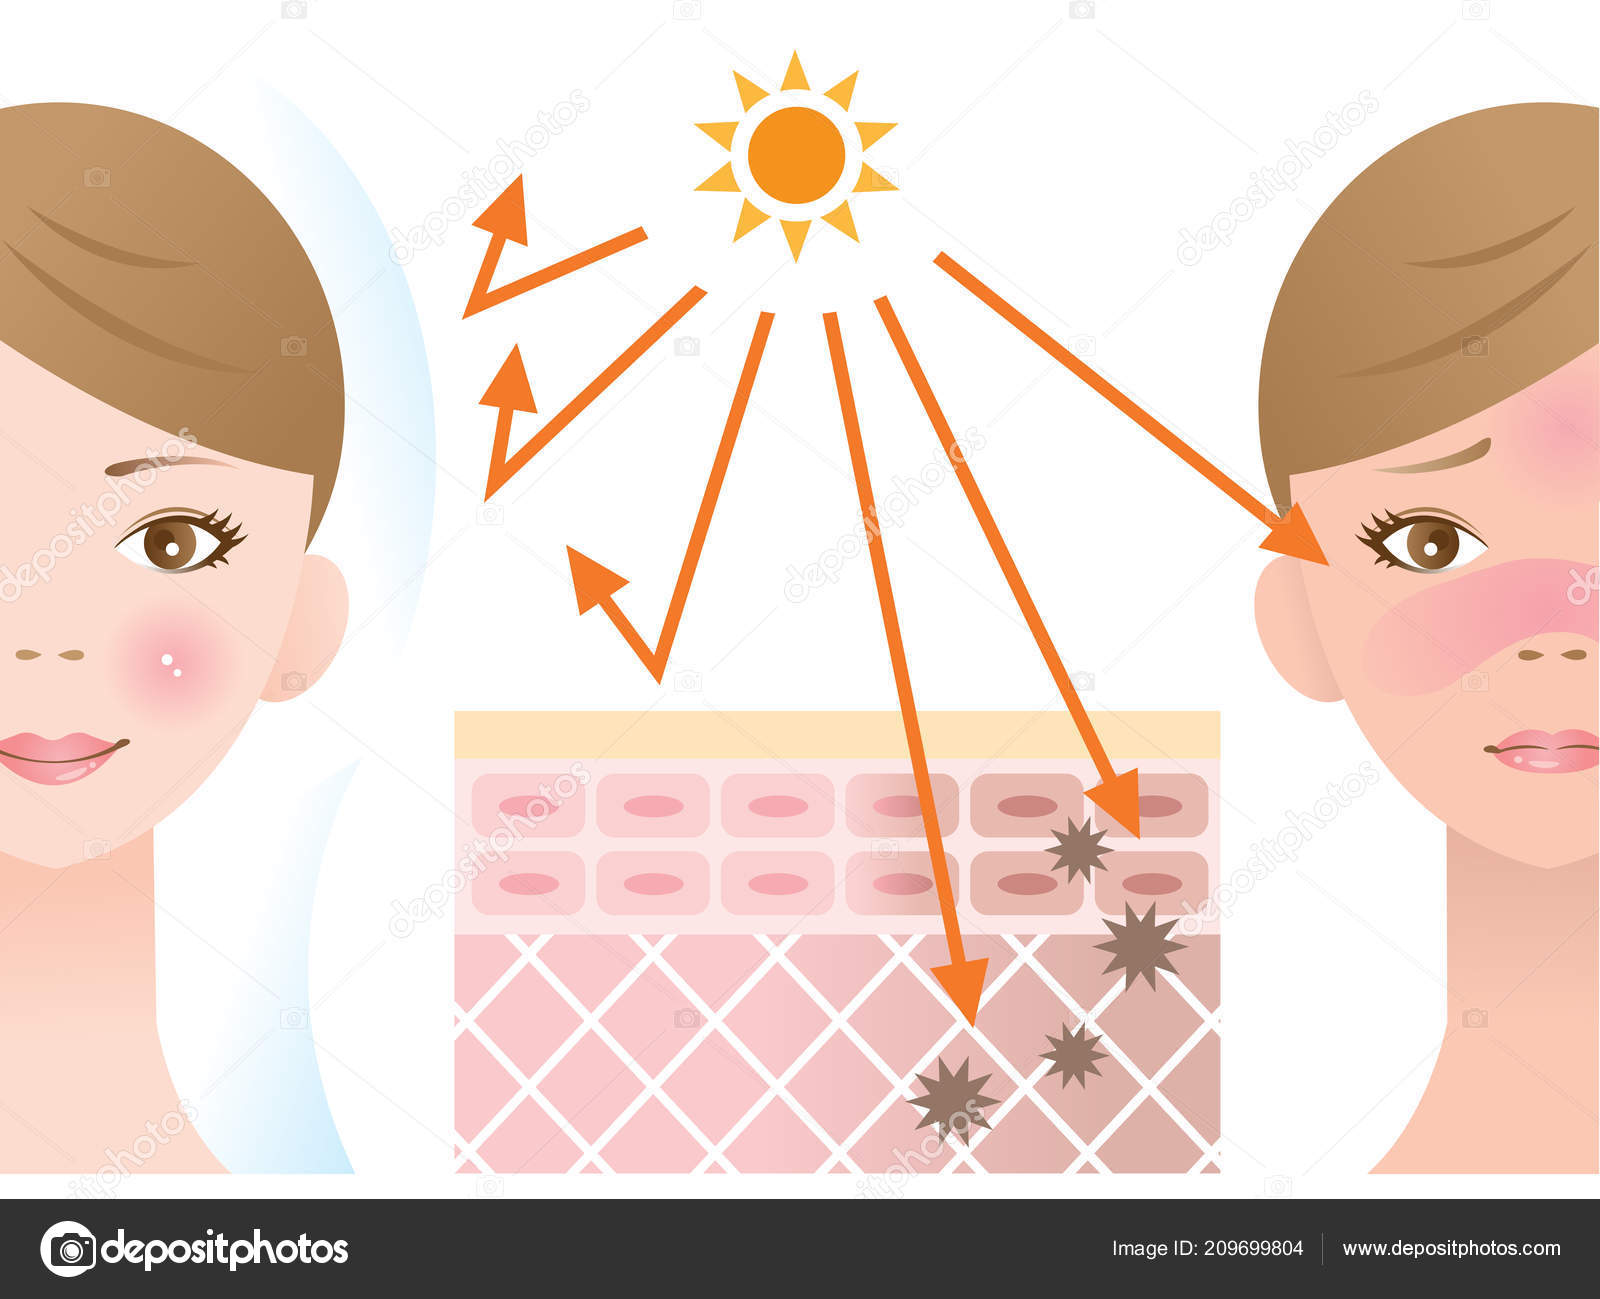 Kem chống nắng được xem là phương pháp hiệu quả ngăn tia UV